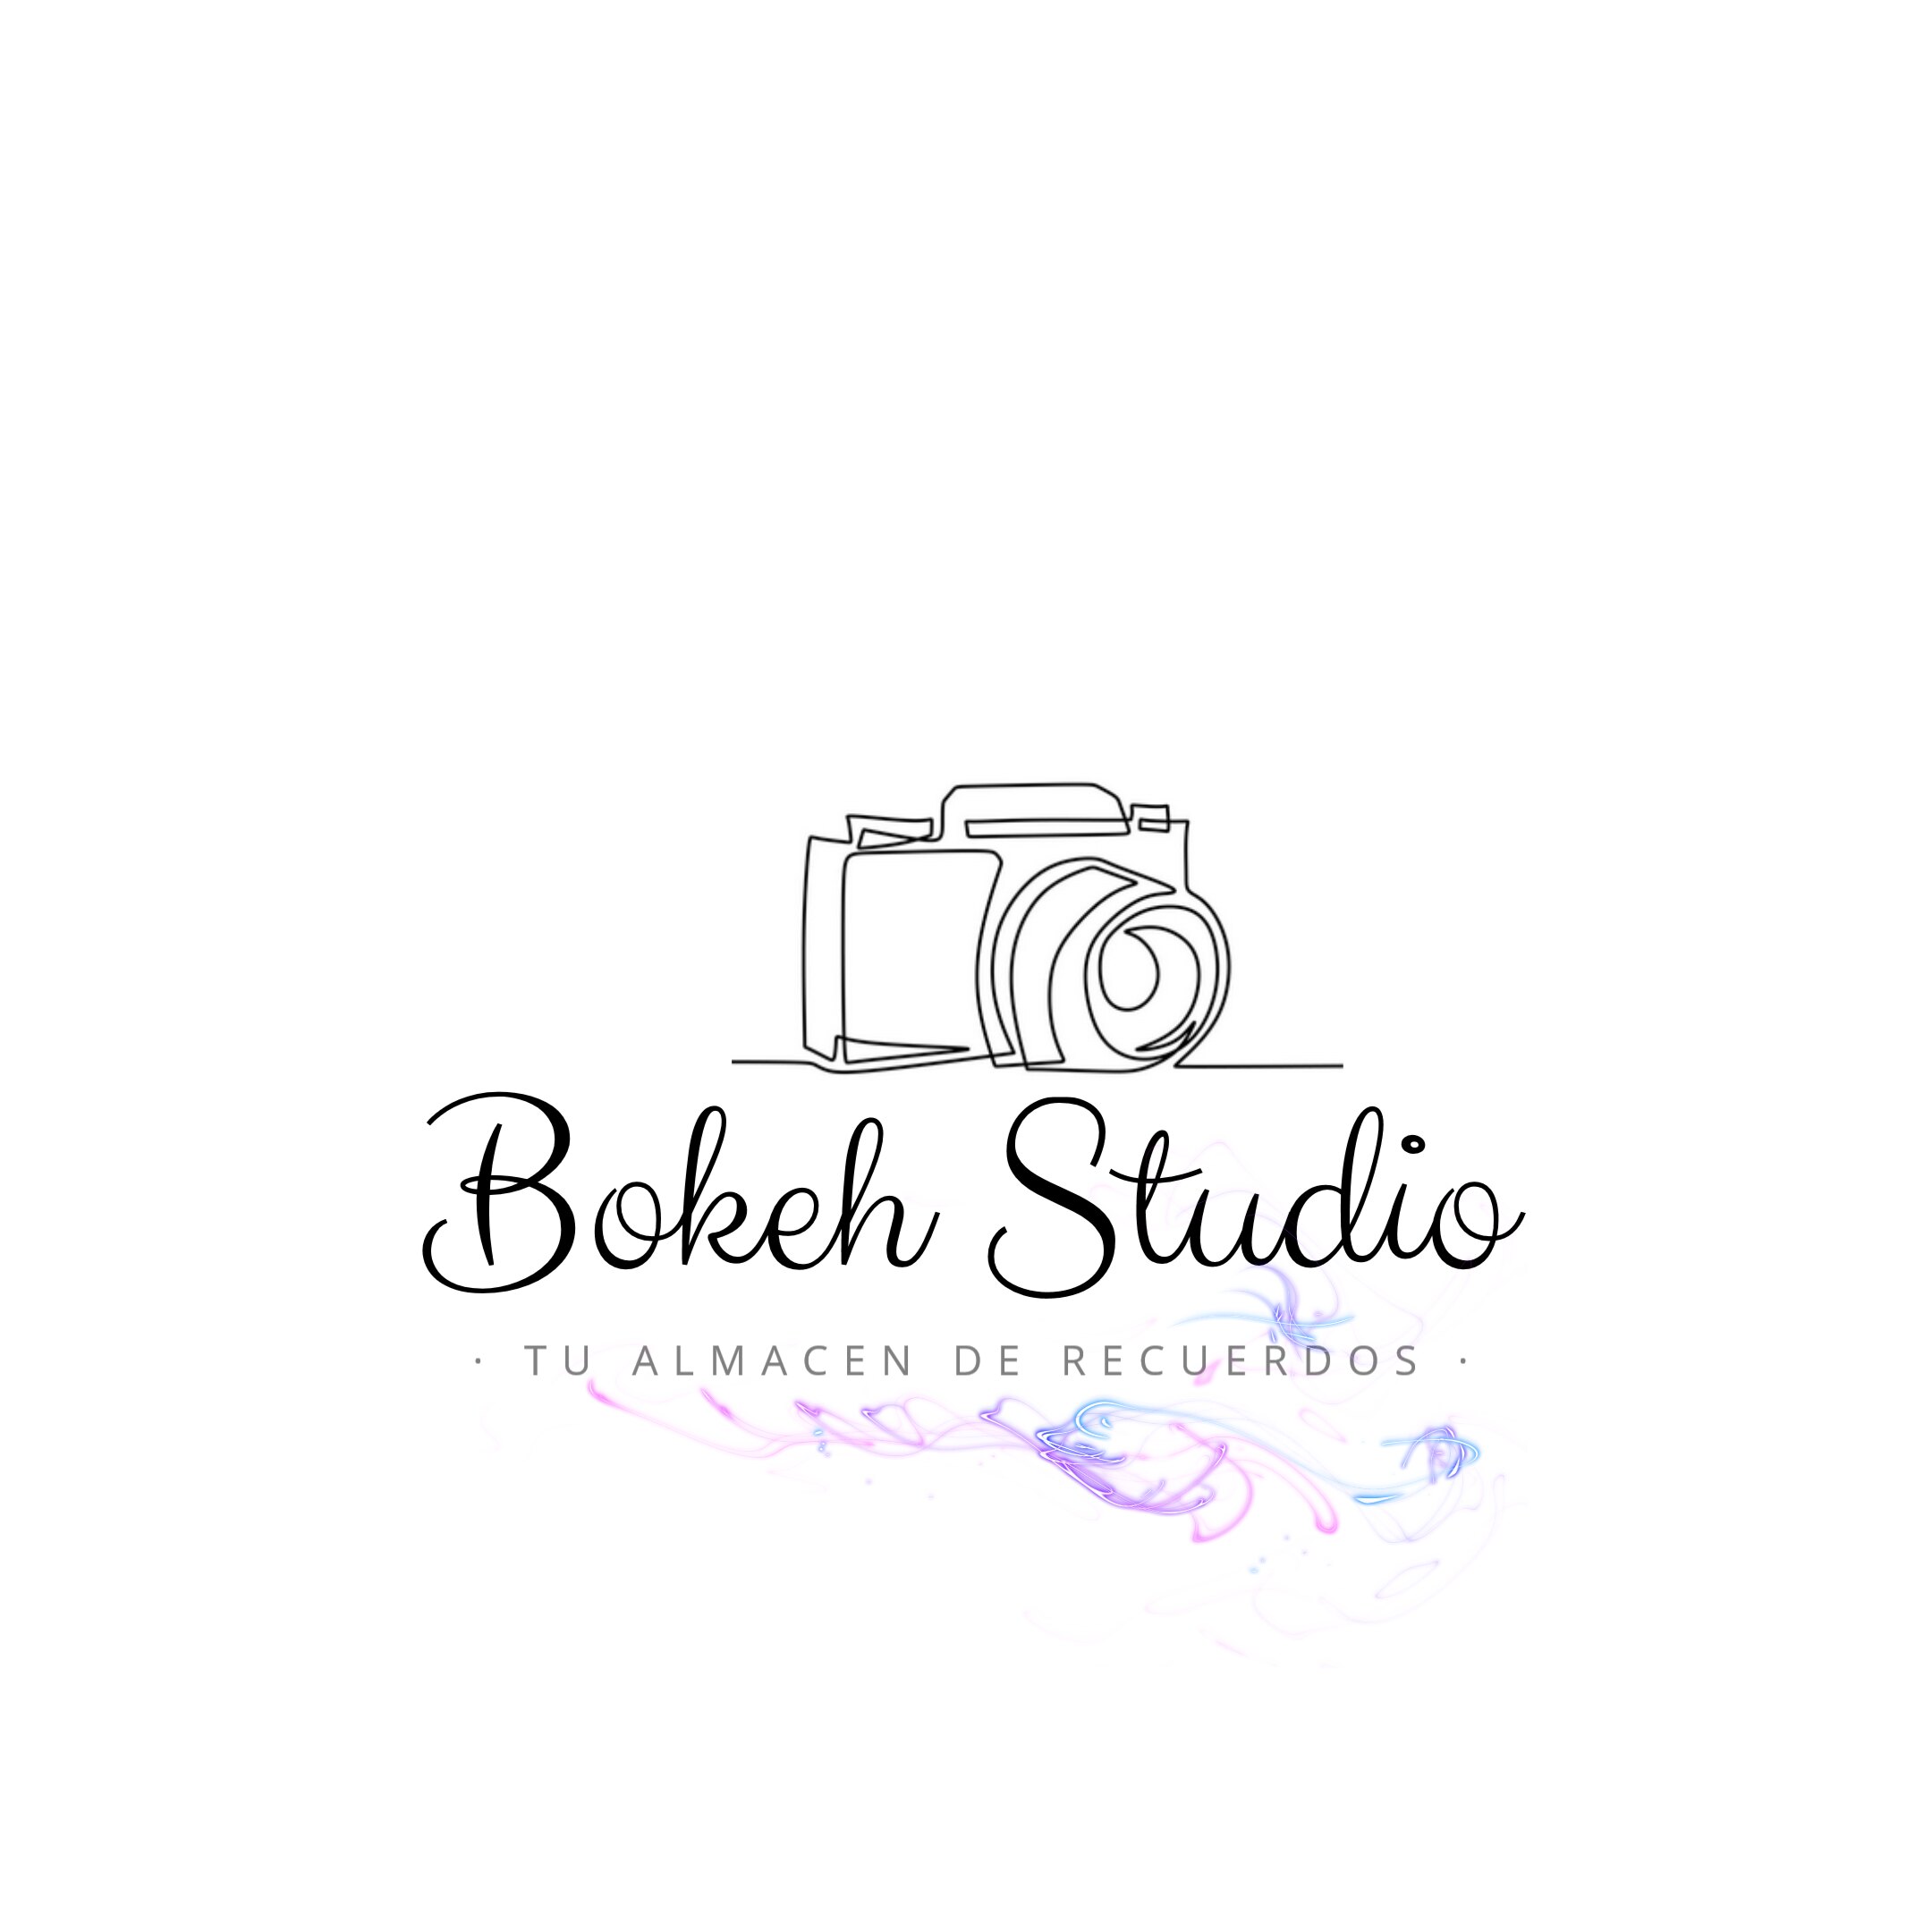 Bokeh Studio